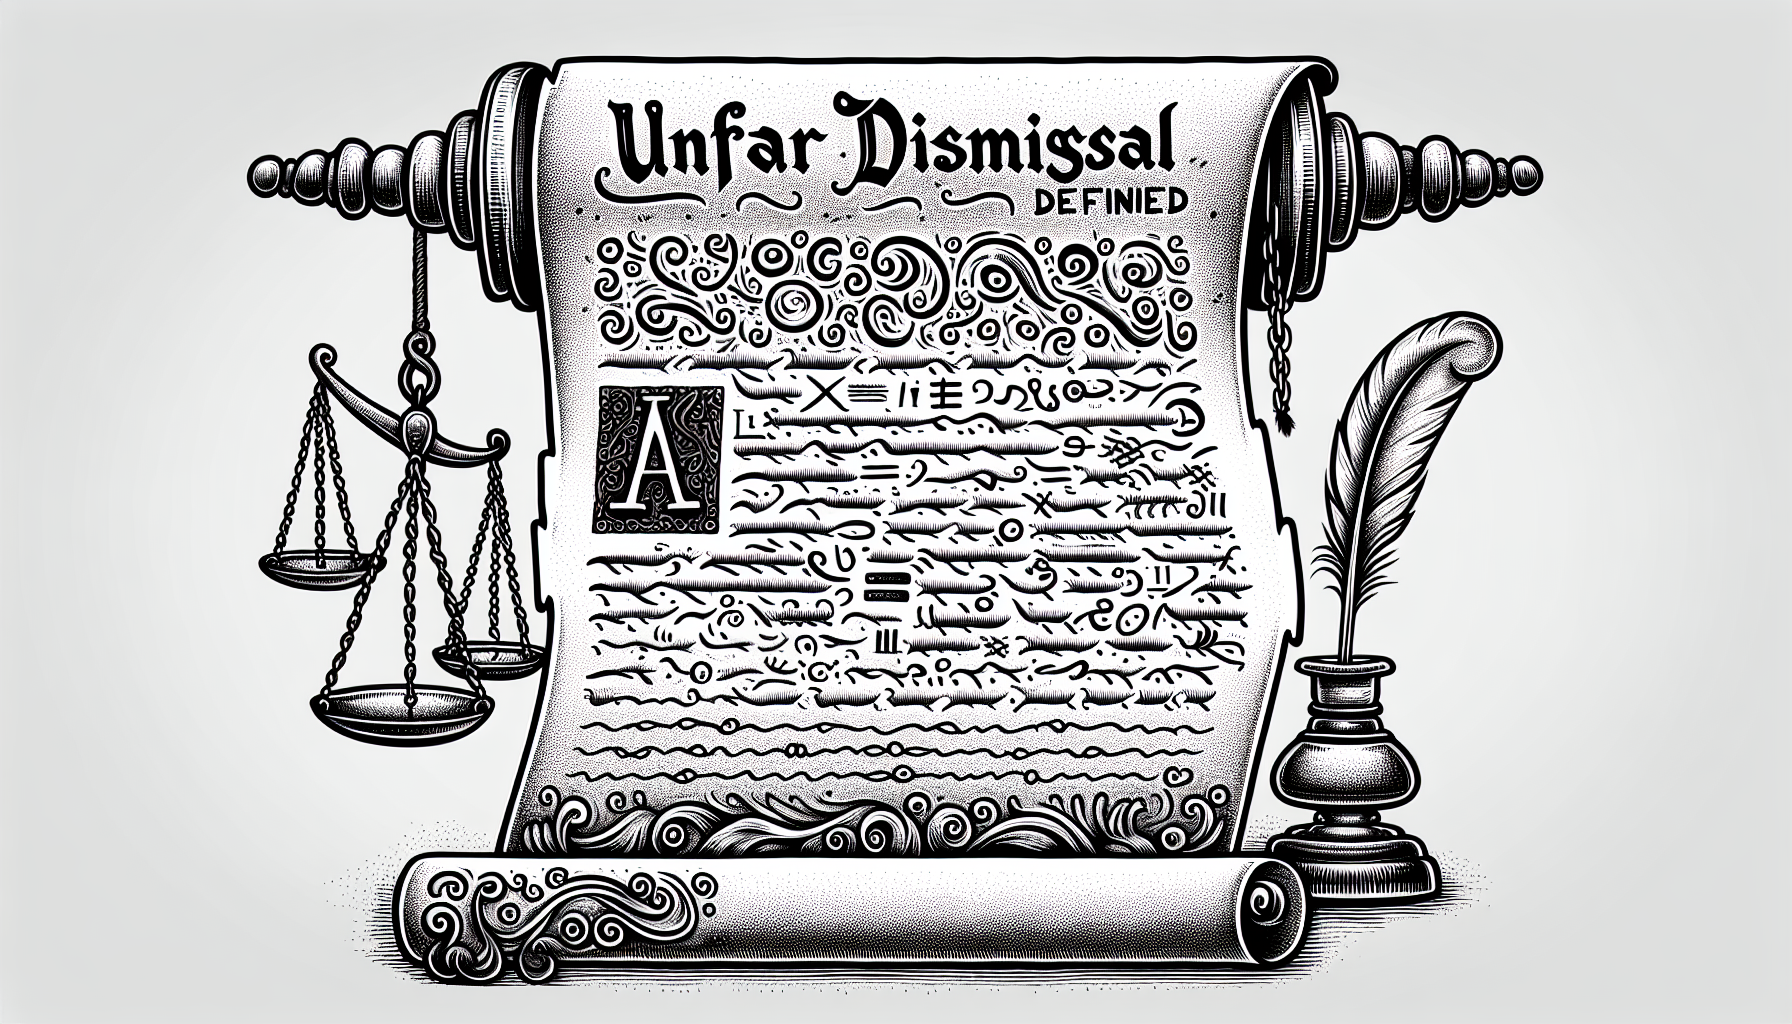 Wrongful Dismissal vs Unfair Dismissal